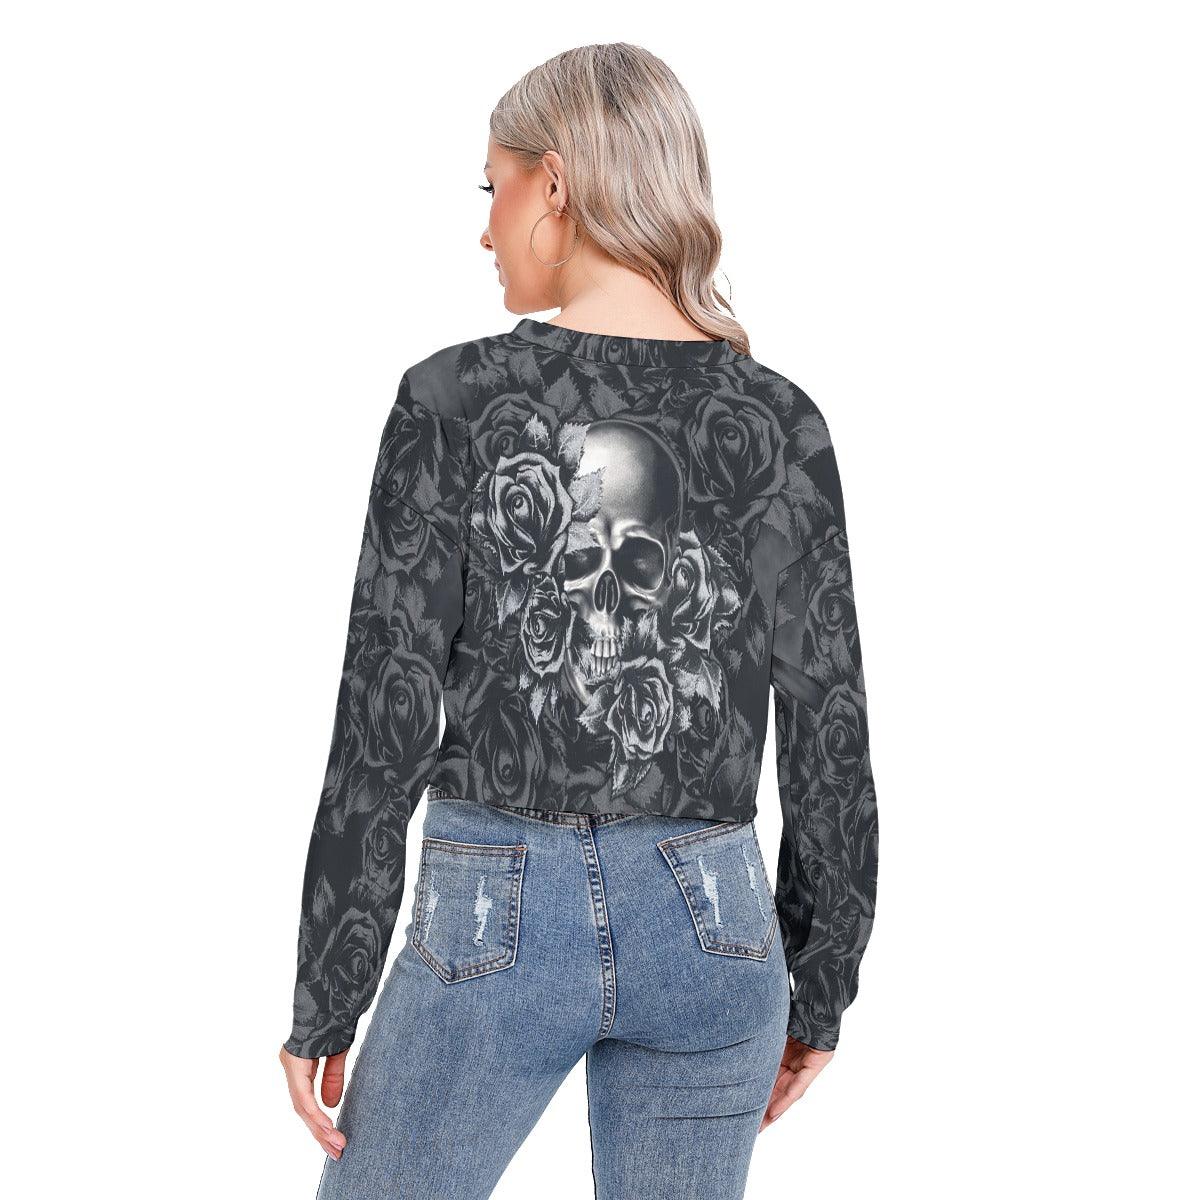 Skull Flower Long Sleeve Sweatshirt With Hem Drawstring - Wonder Skull